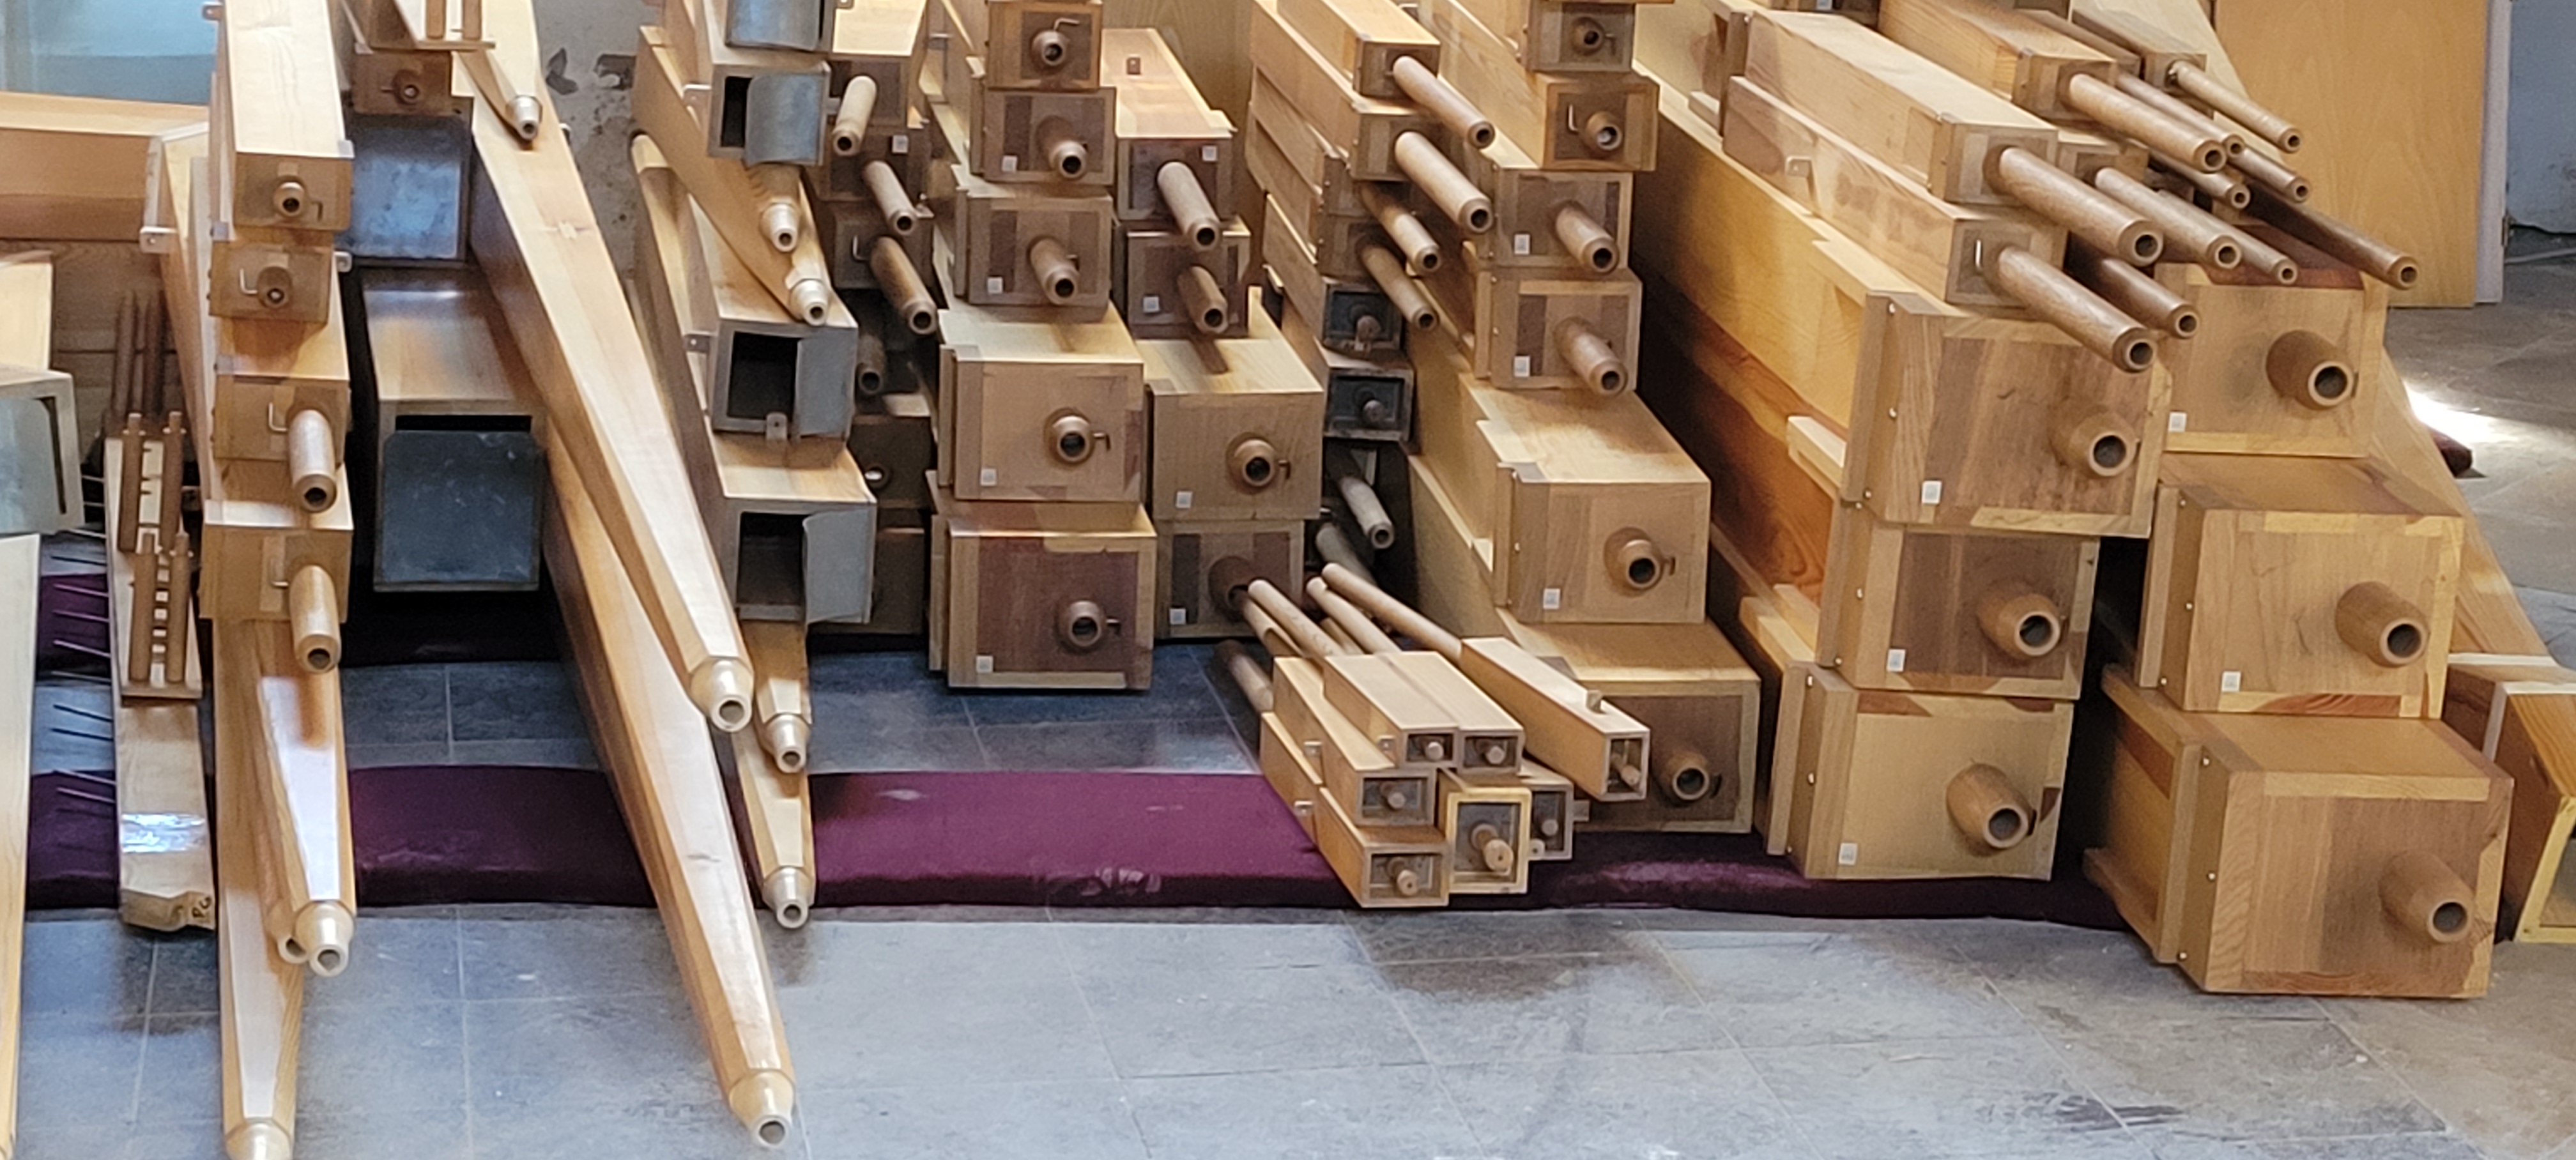 Ausgebaute Orgelpfeifen der Eule Orgel Neumarkt i.d.OPf., Foto kb